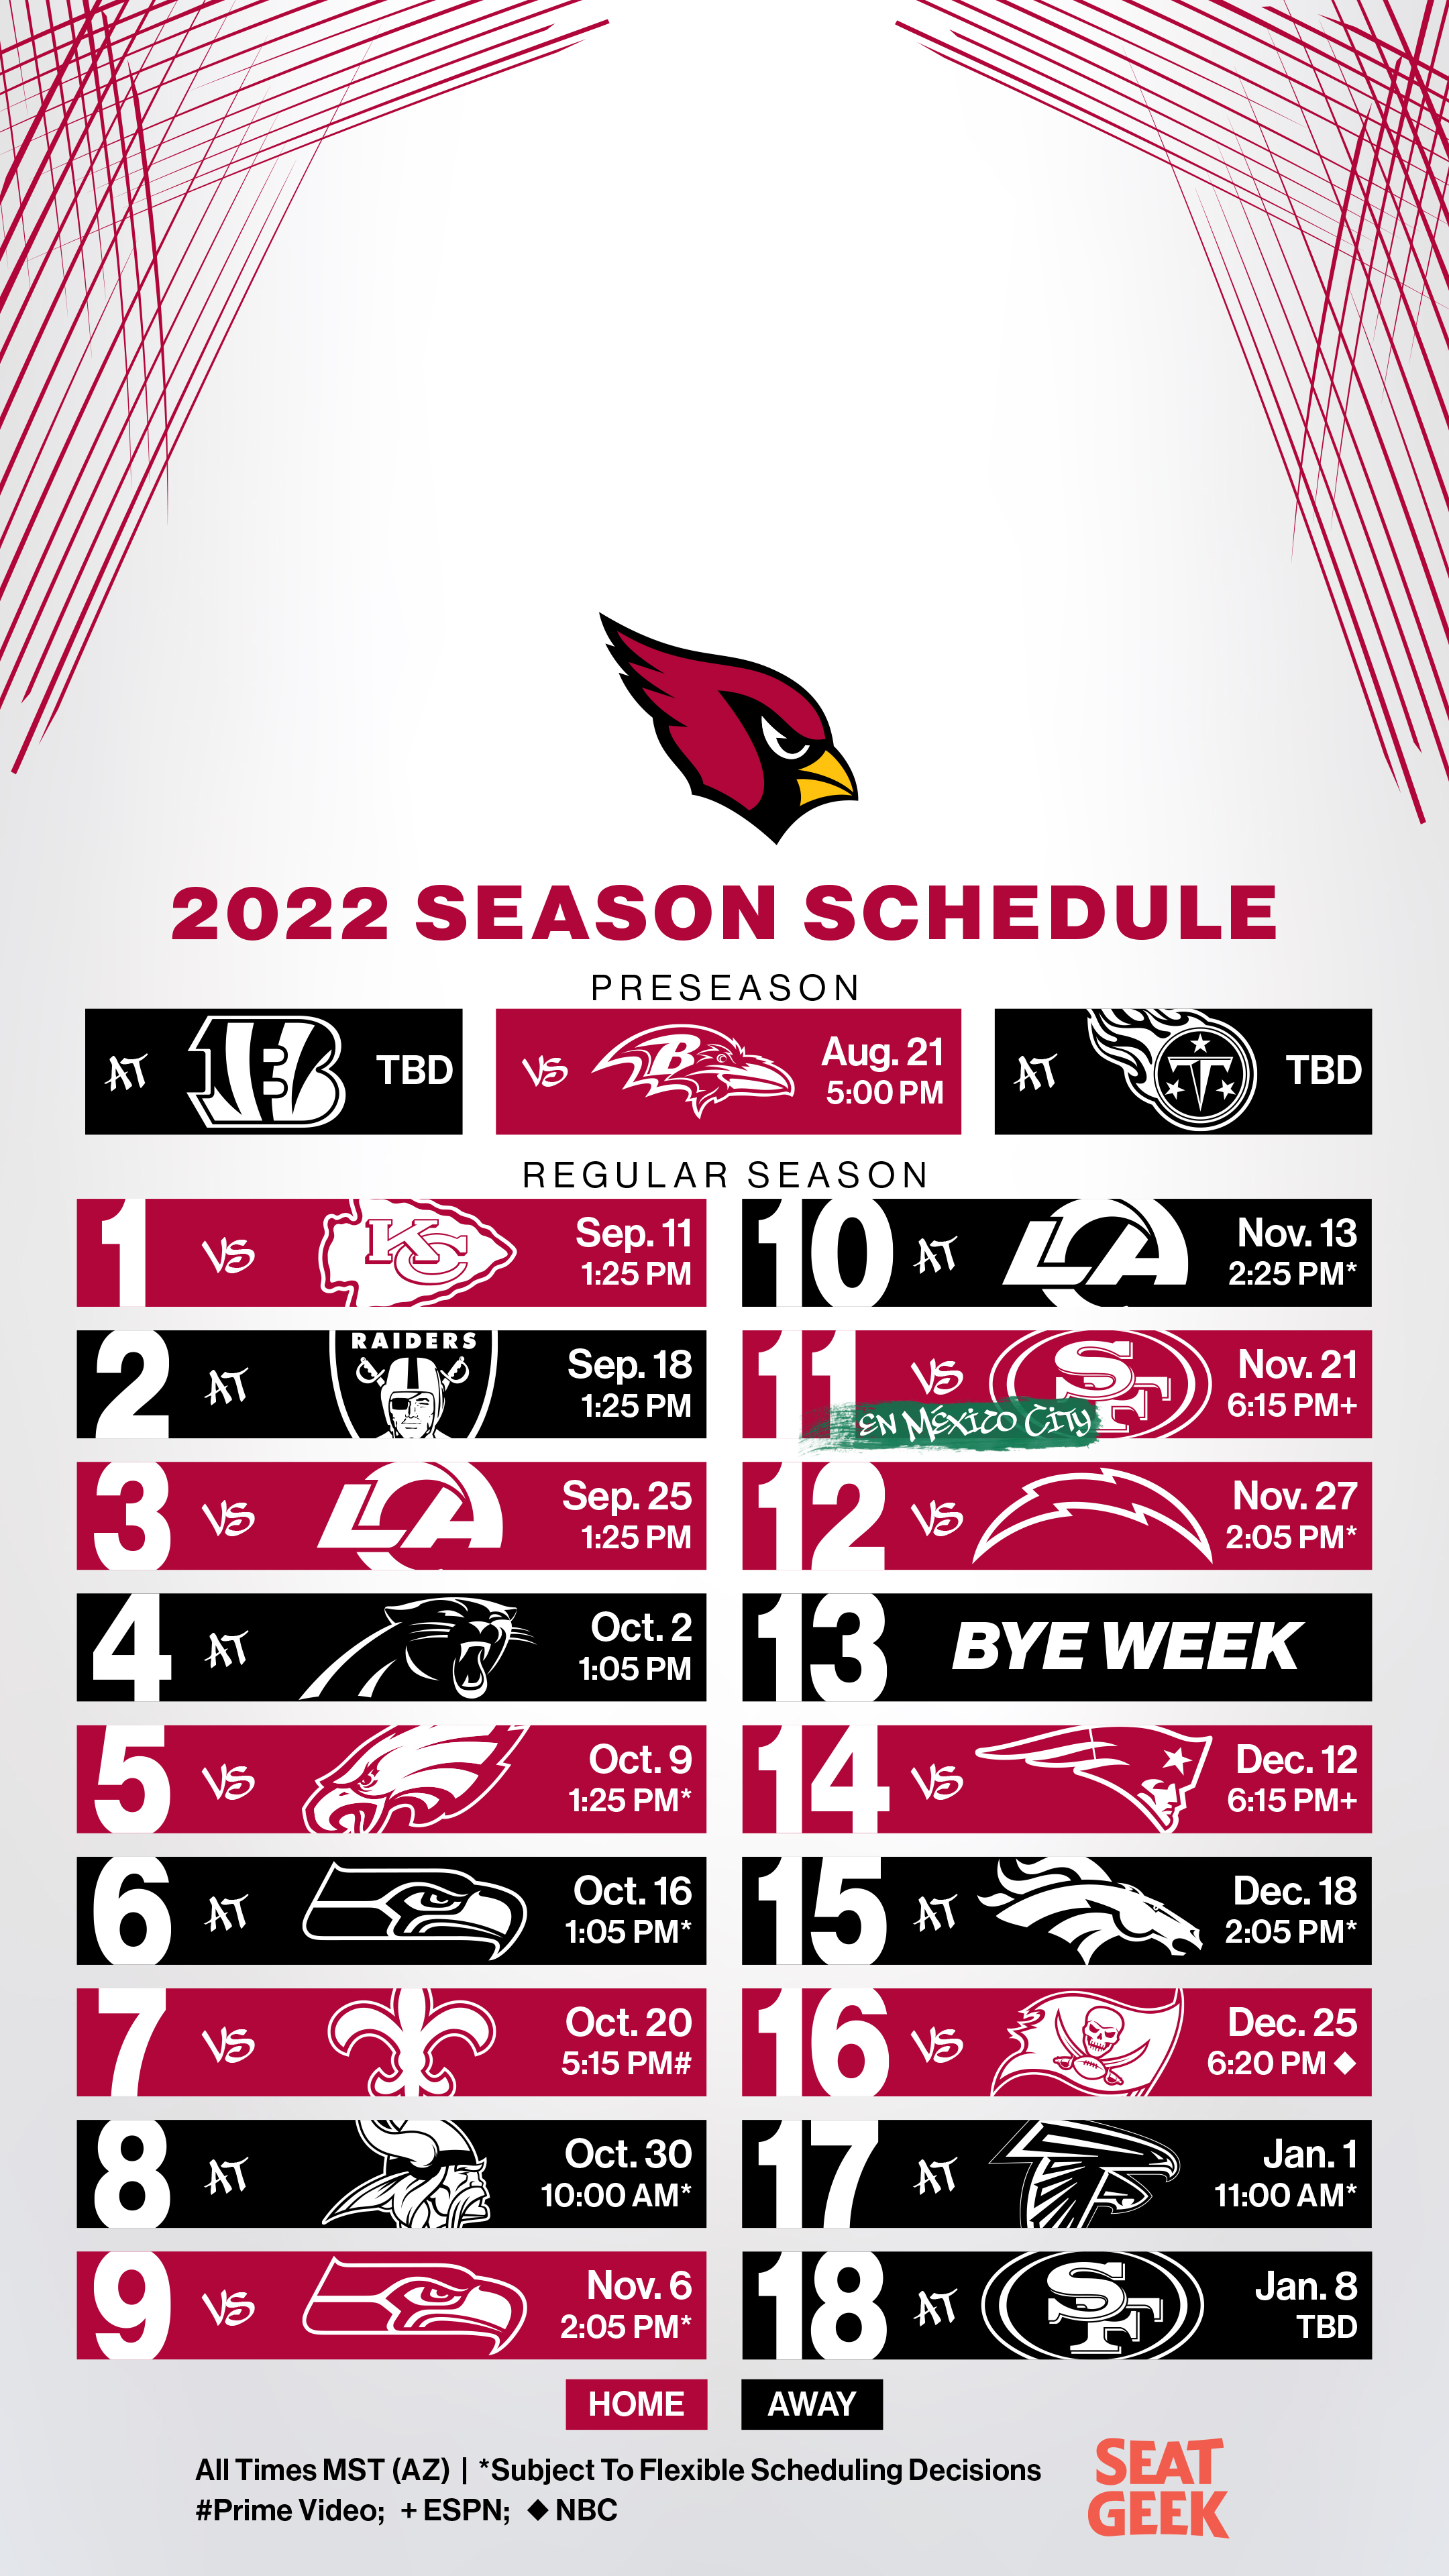 Springfield Cardinals 2022 schedule released